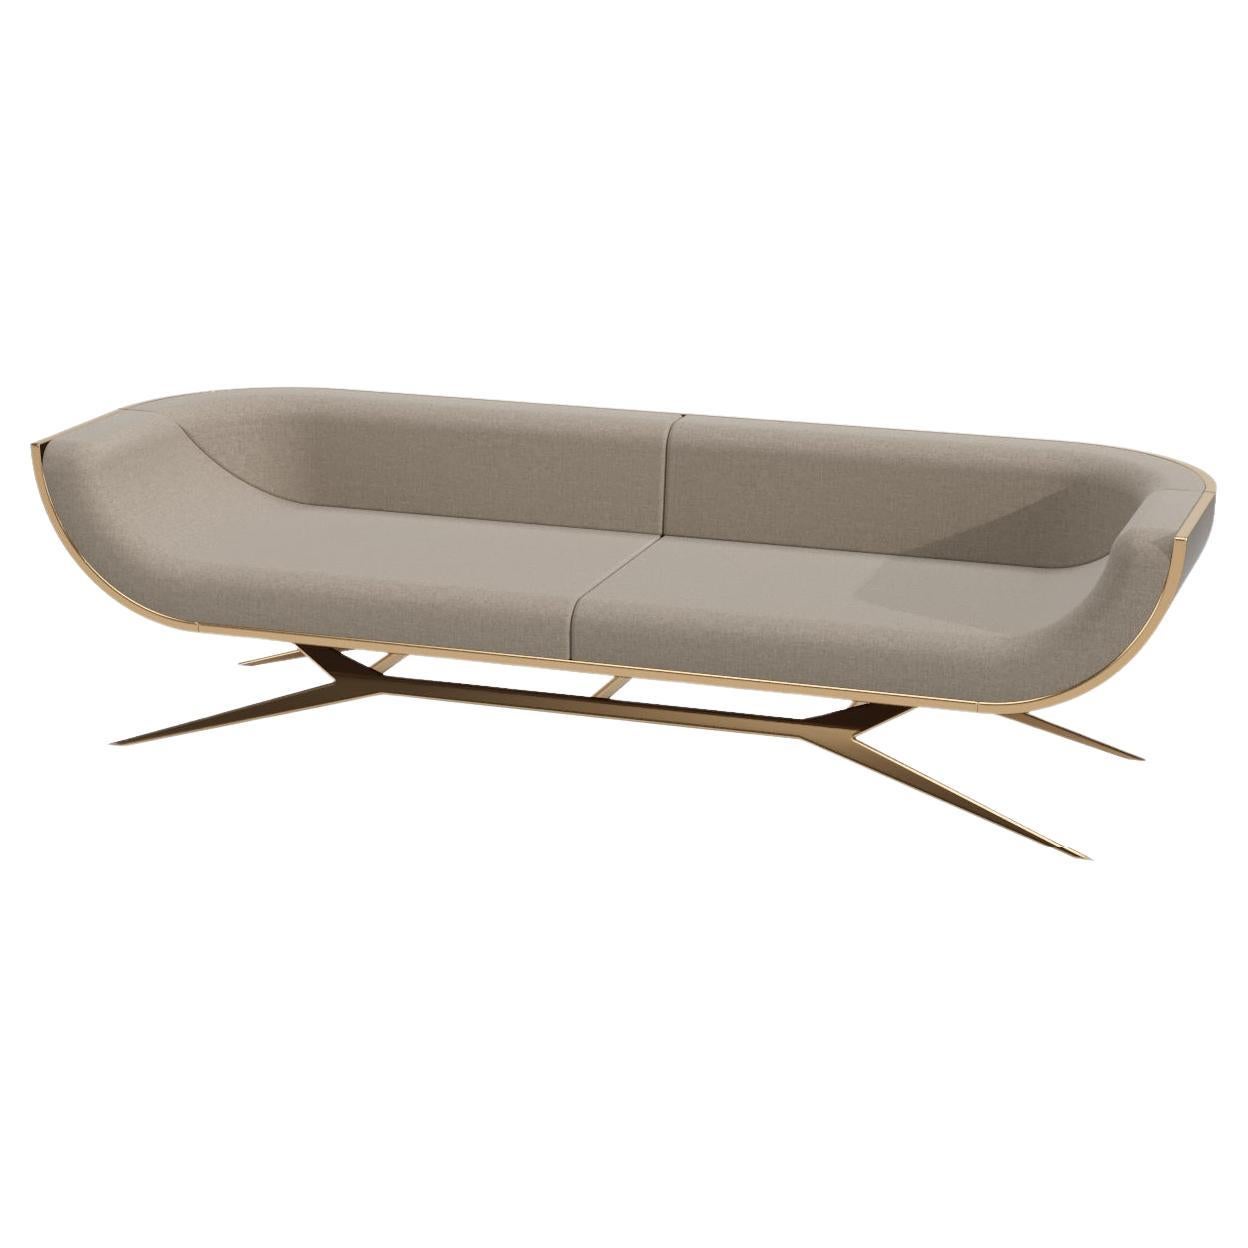 Modernes dreisitziges Sofa aus Holz mit geschwungener Rückenlehne aus Eisenholz, poliertem Messing und Goldausführung